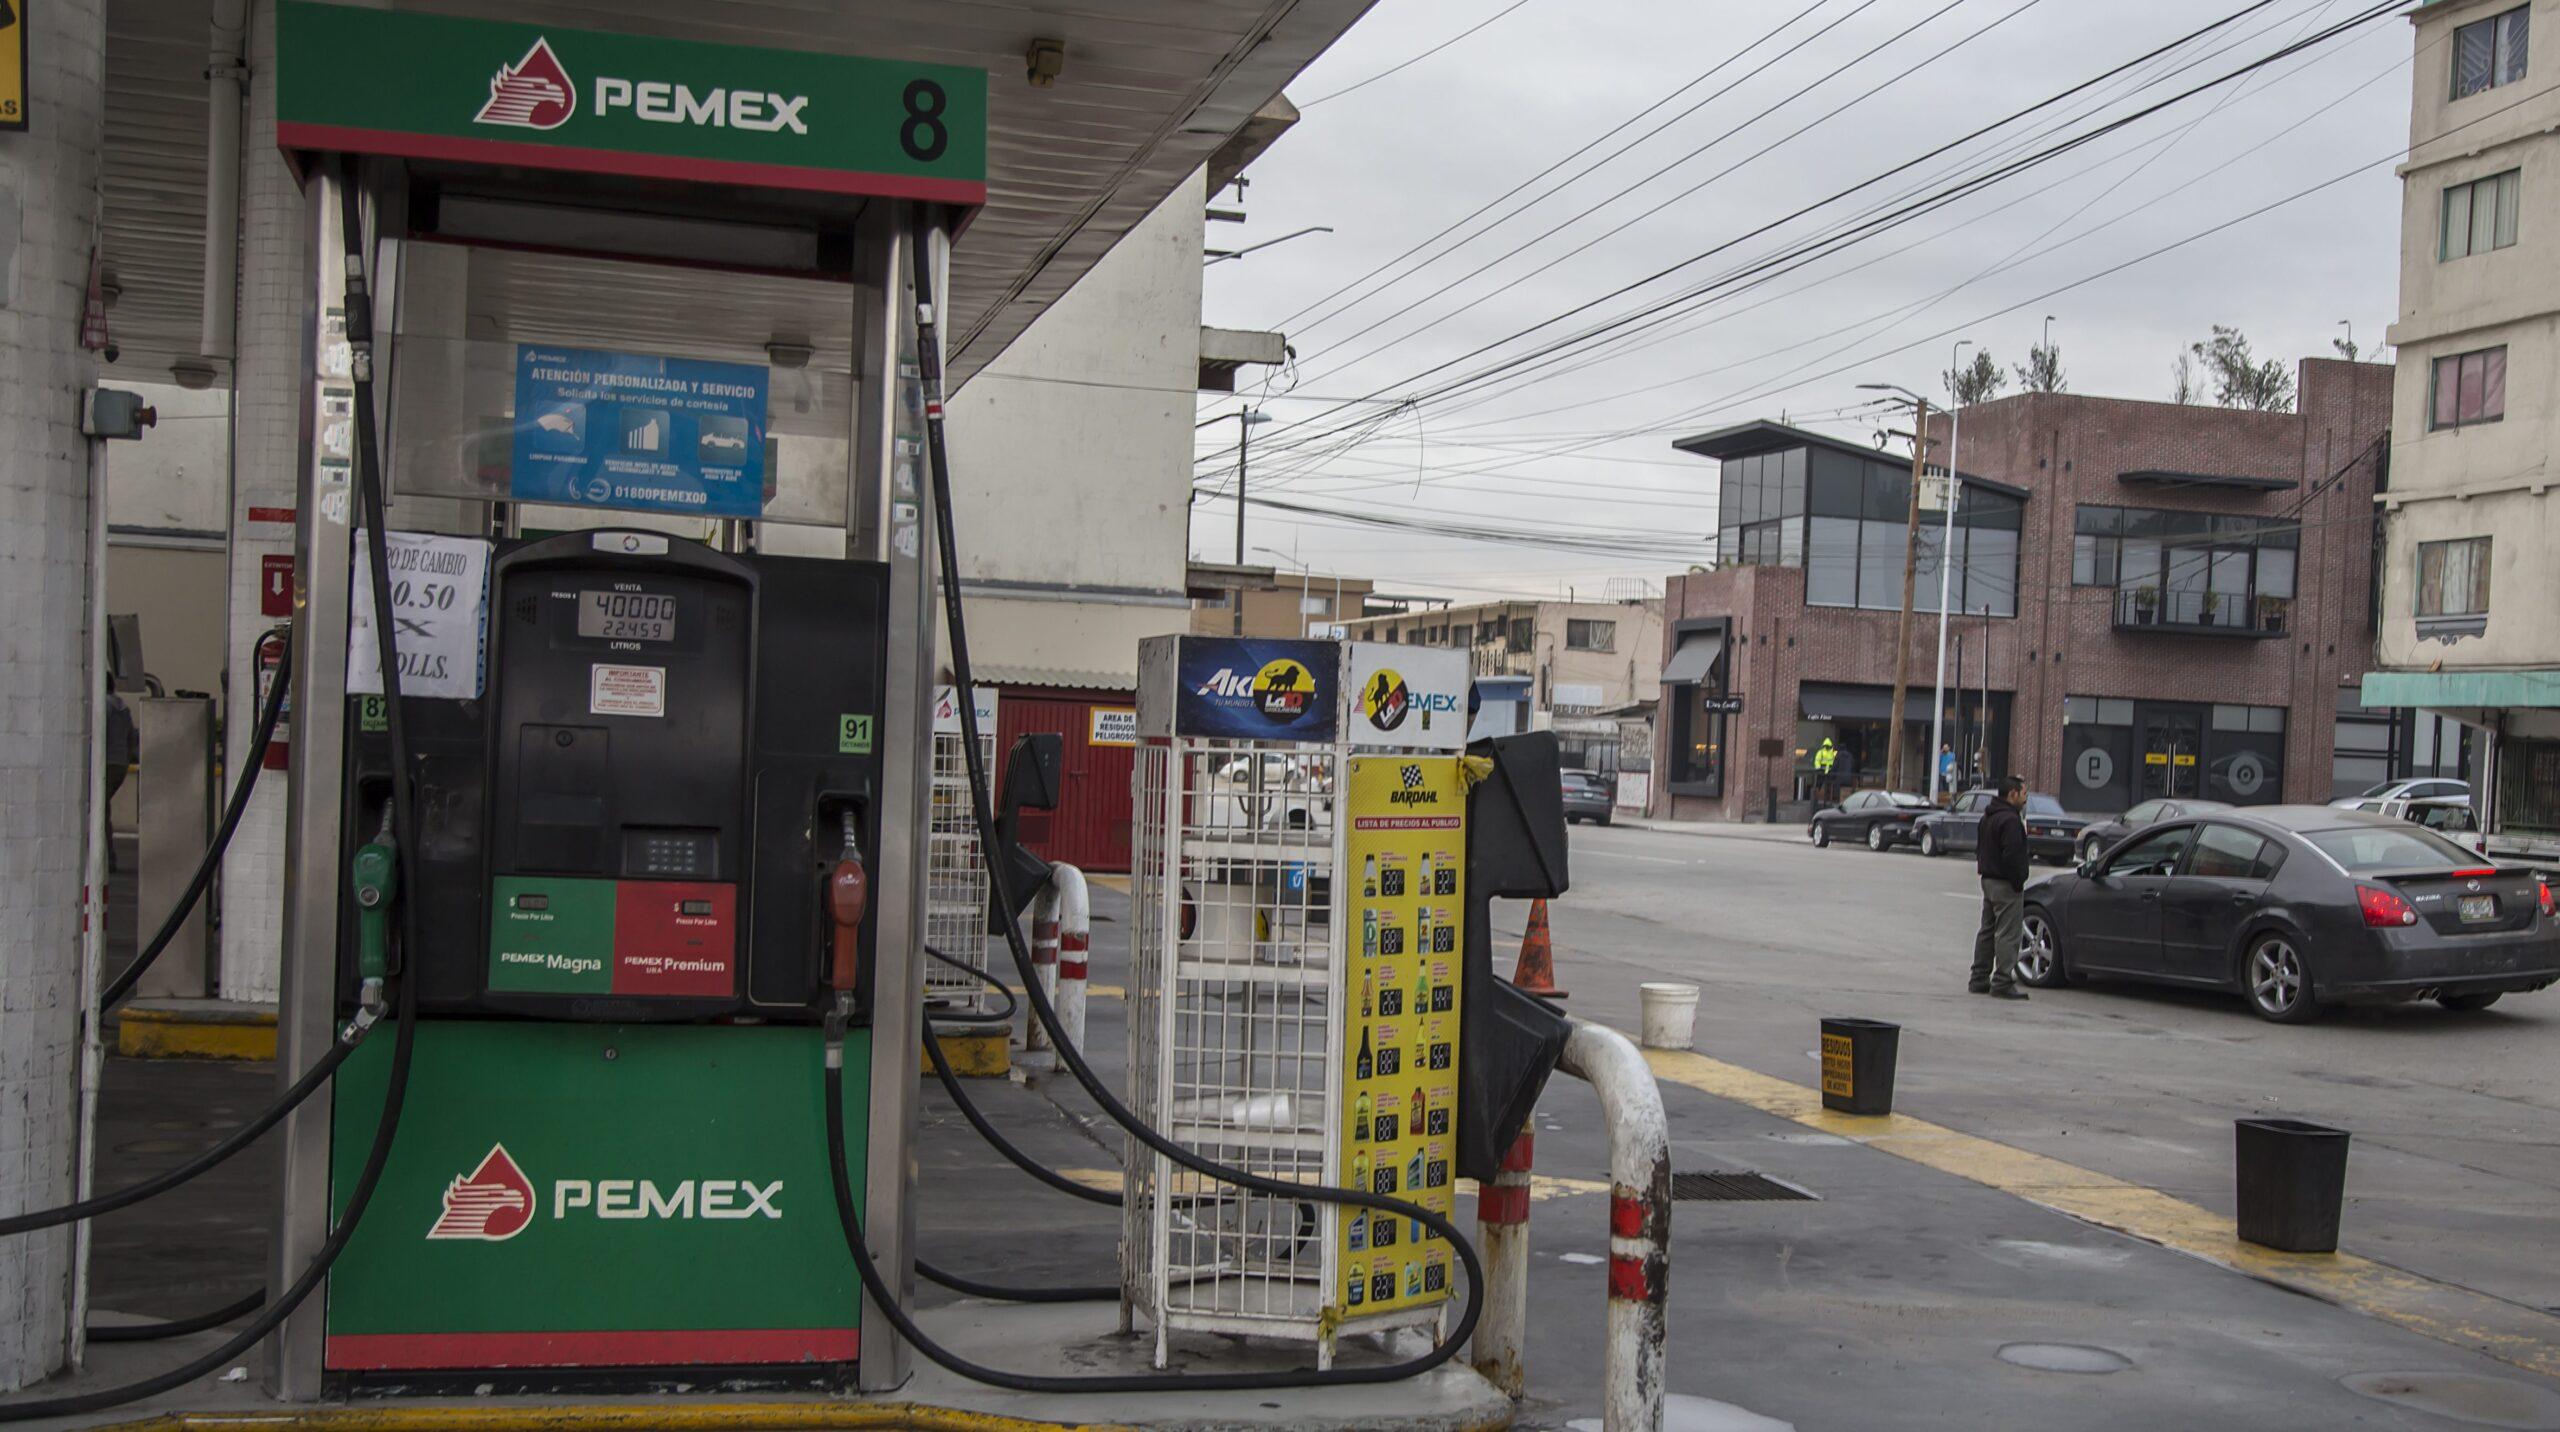 Alza en las gasolinas dispara la inflación a 4.72 en enero, la tasa más alta en 5 años